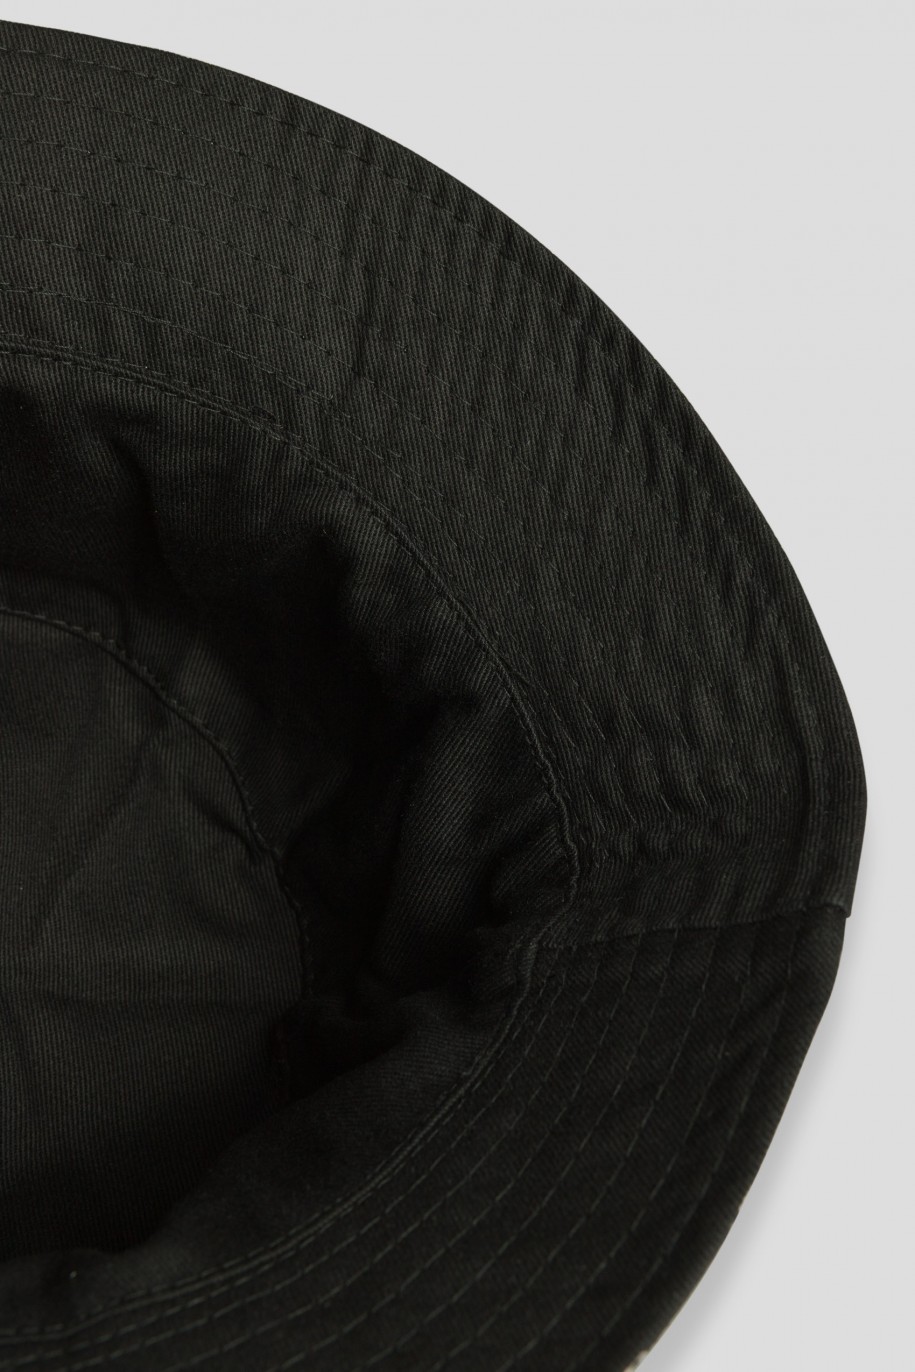 Czarny dwustronny kapelusz typu bucket hat - 42712